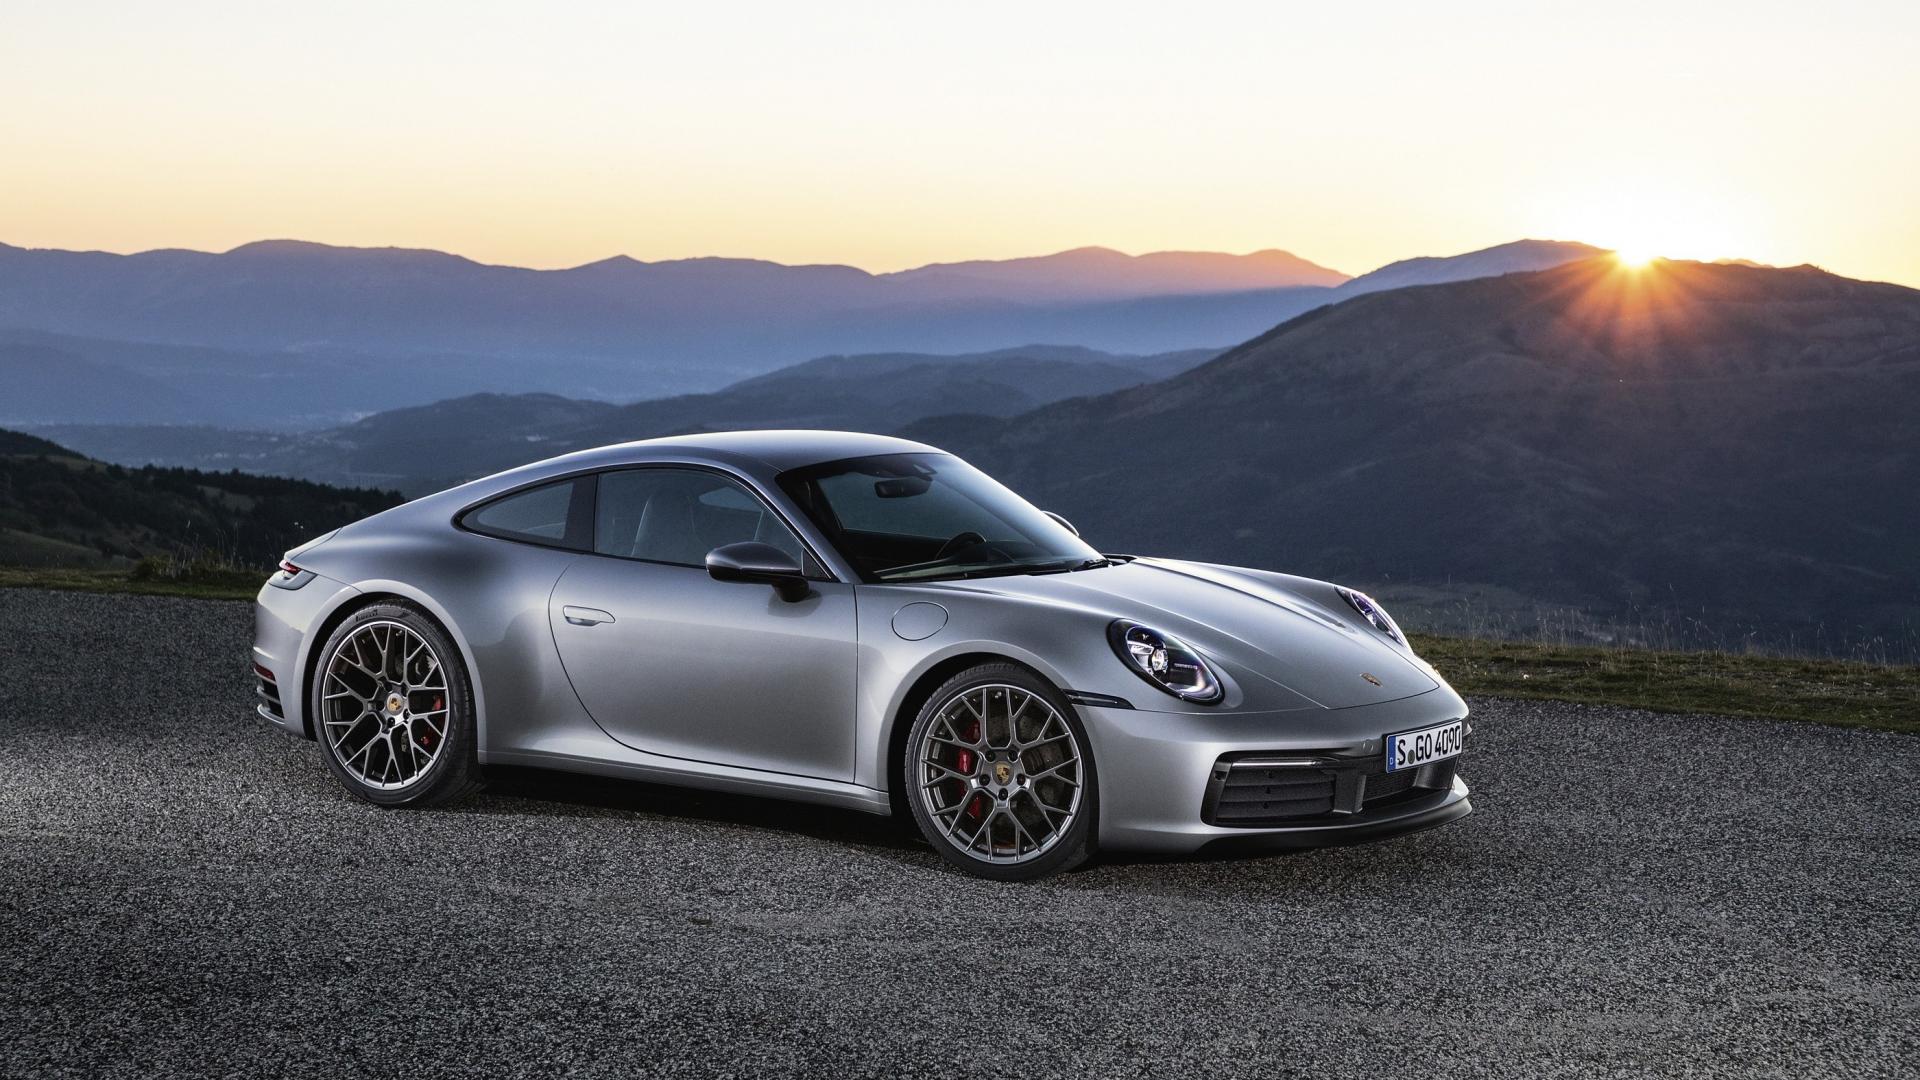 Modelli Porsche Carrera - Scopri le Specifiche e i Prezzi